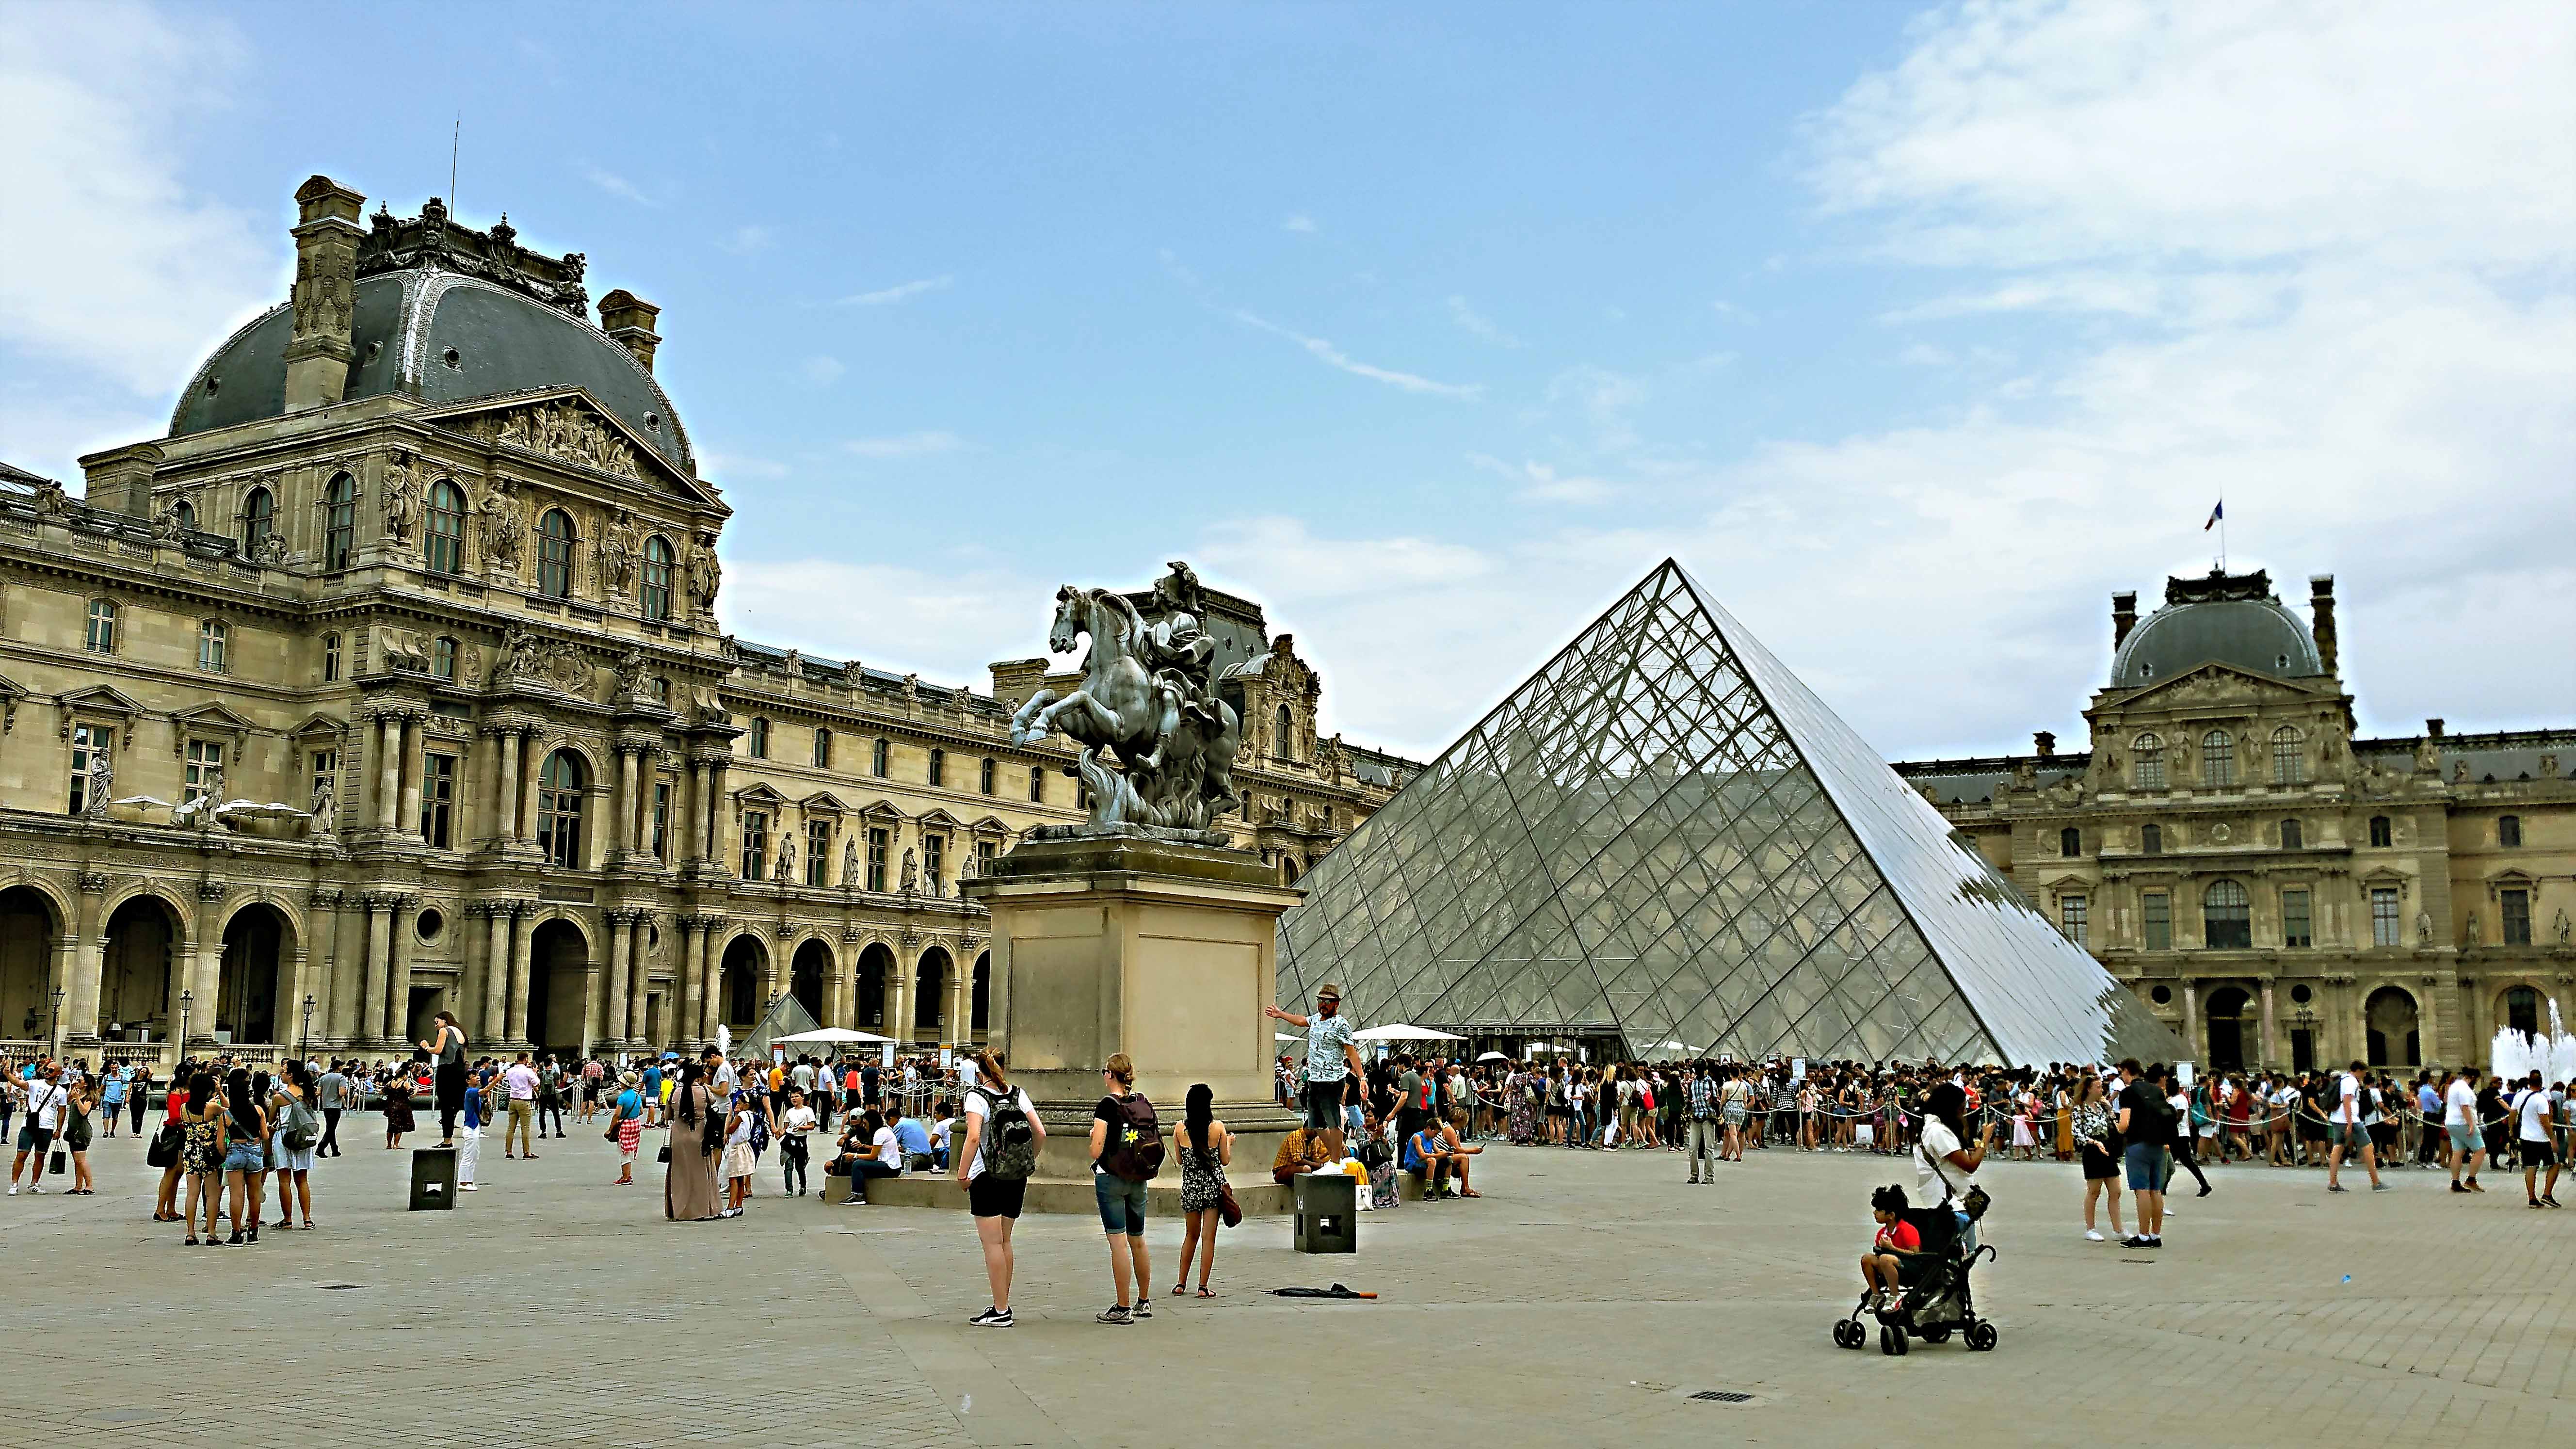 Der alte Louvre mit der modernen Glaspyramide in der Mitte ist das meistbesuchte Kunstmuseum der Welt.